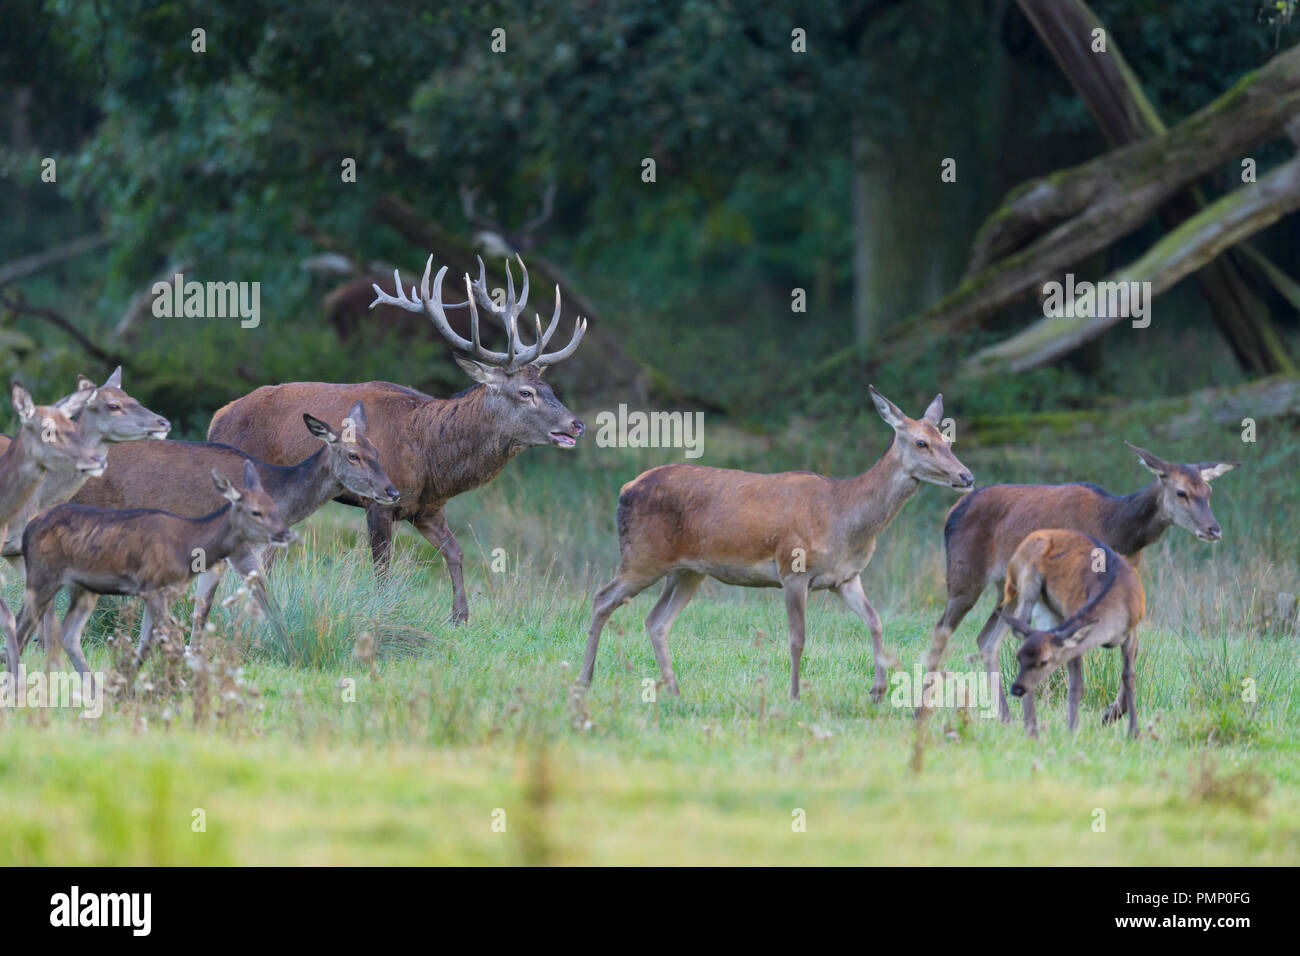 Red Deer, Cervus elaphus, Rutting Season, Germany, Europe Stock Photo